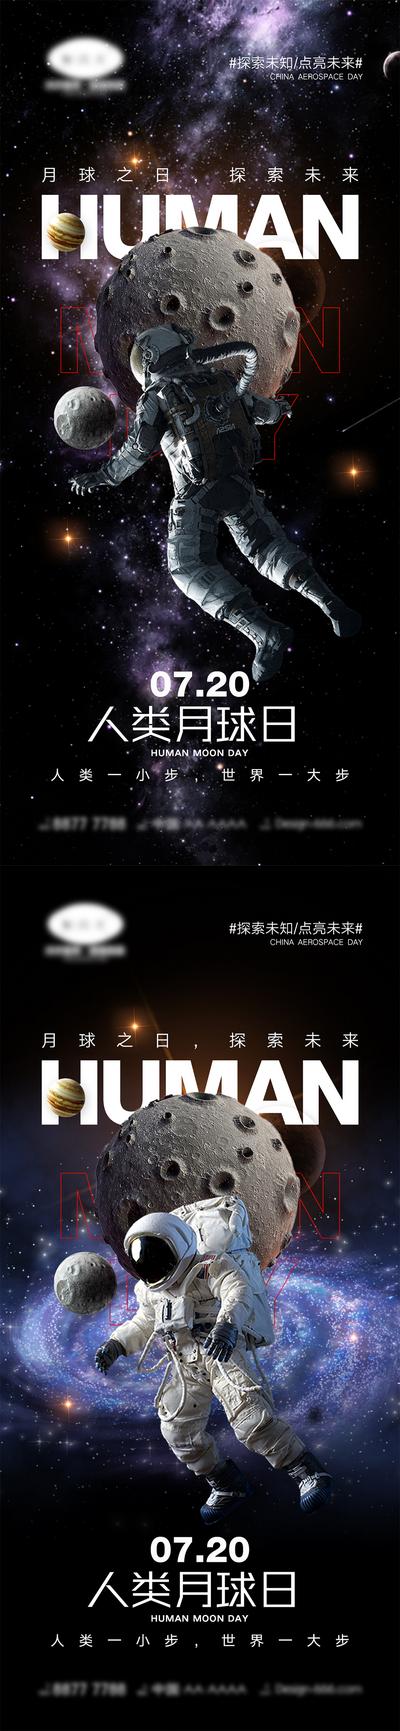 【南门网】海报 公立节日 中国航天日 世界航天日 火箭 宇航员 宇宙 地球 太空 4.24 7.20 人类月球日 月球 探索